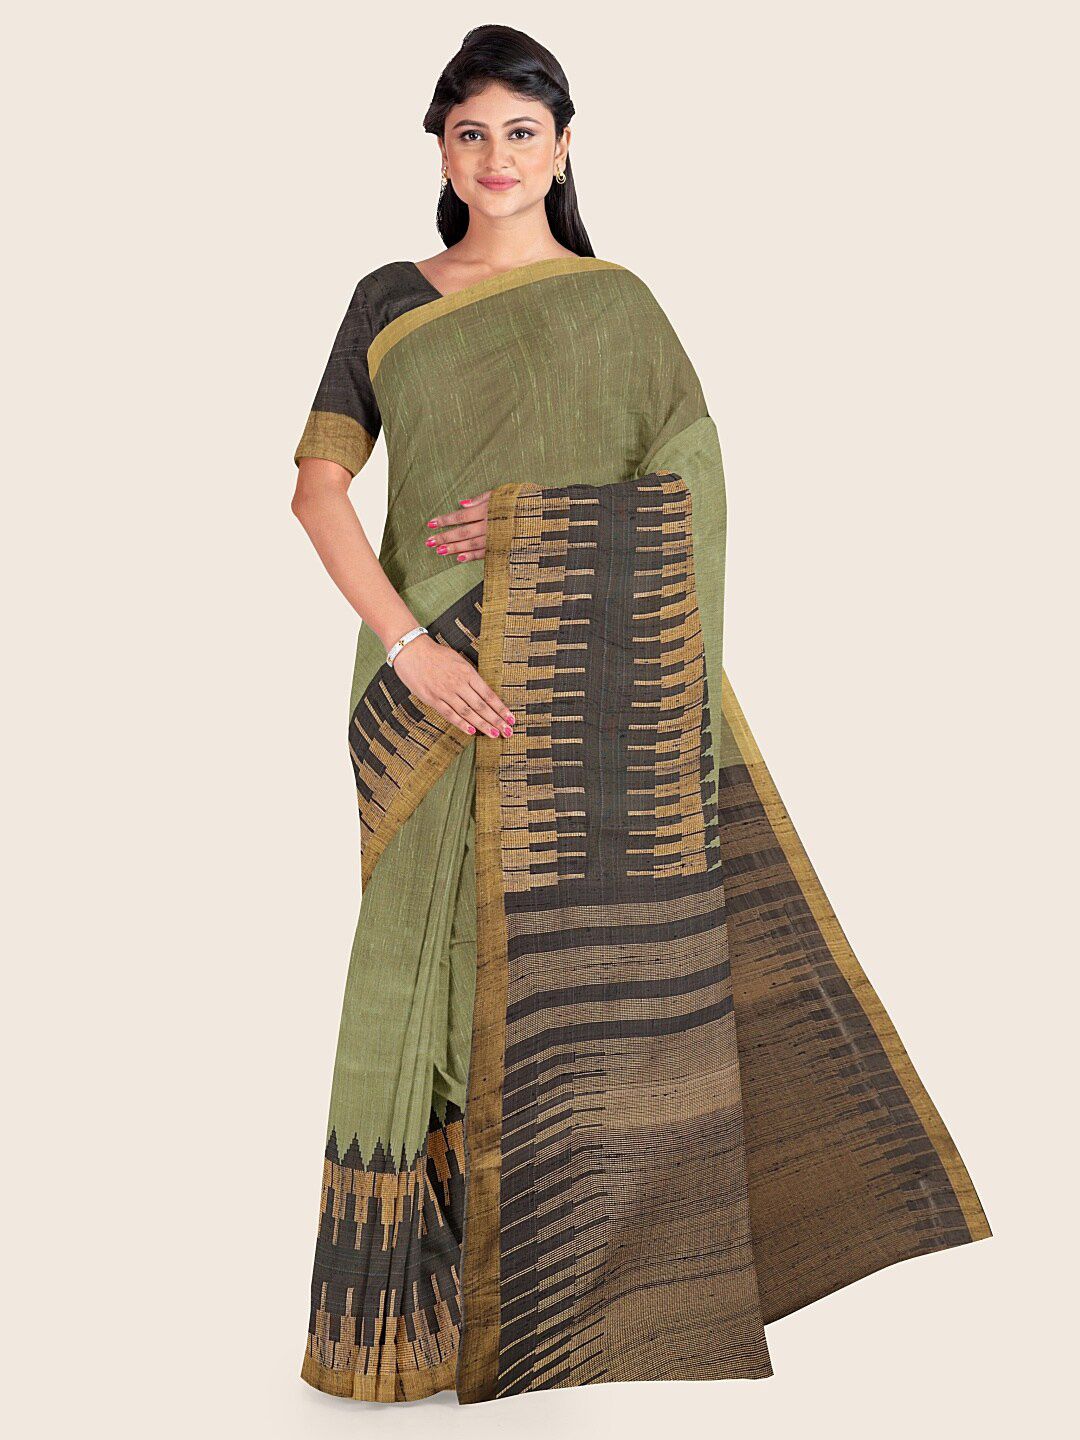 Pothys Green & Charcoal Zari Jute Silk Saree Price in India